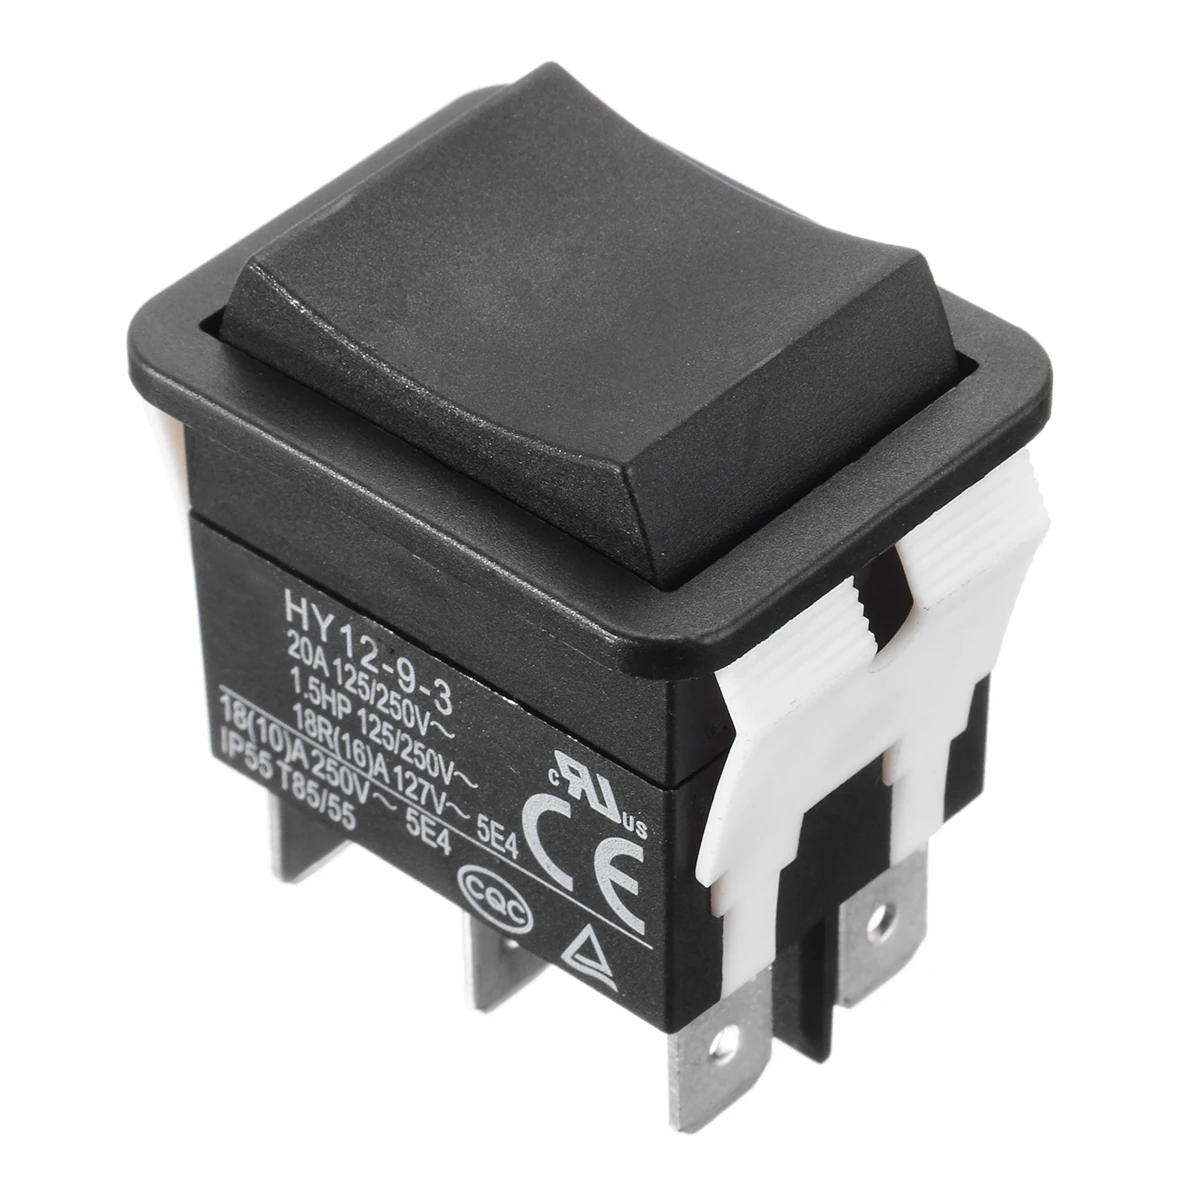 Кнопочный переключатель HY12-9-3 модель 6 булавки промышленный Электрический клавишный вкл/выкл дуговой переключатель 125/250V 18/20A